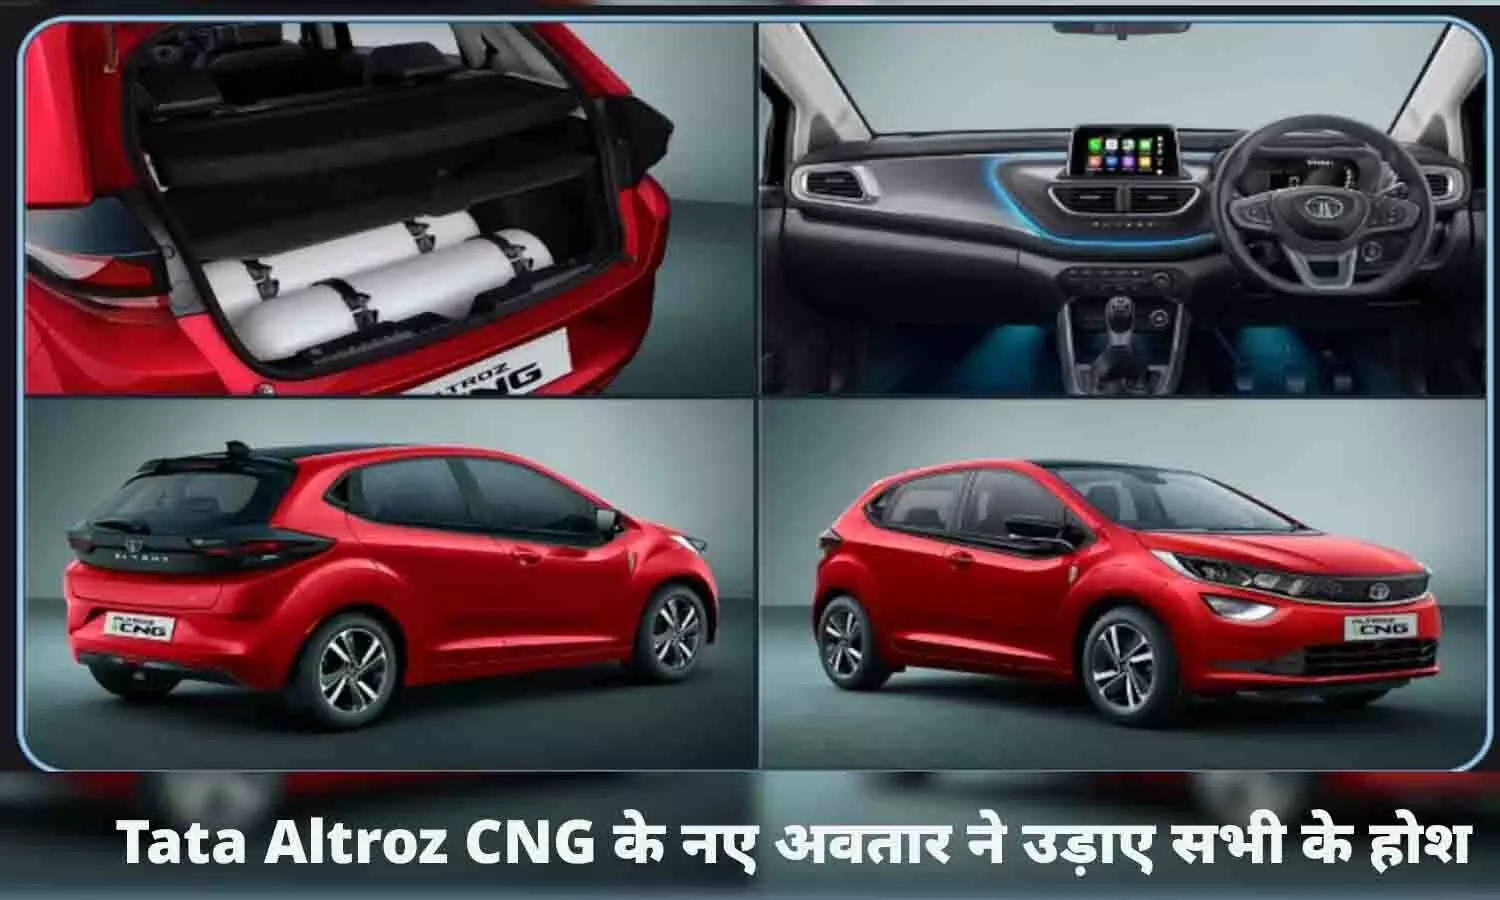 Tata Altroz CNG के नए अवतार ने उड़ाए सभी के होश, तेजी से लोग का रहे बुकिंग, जाने फीचर्स और माइलेज...